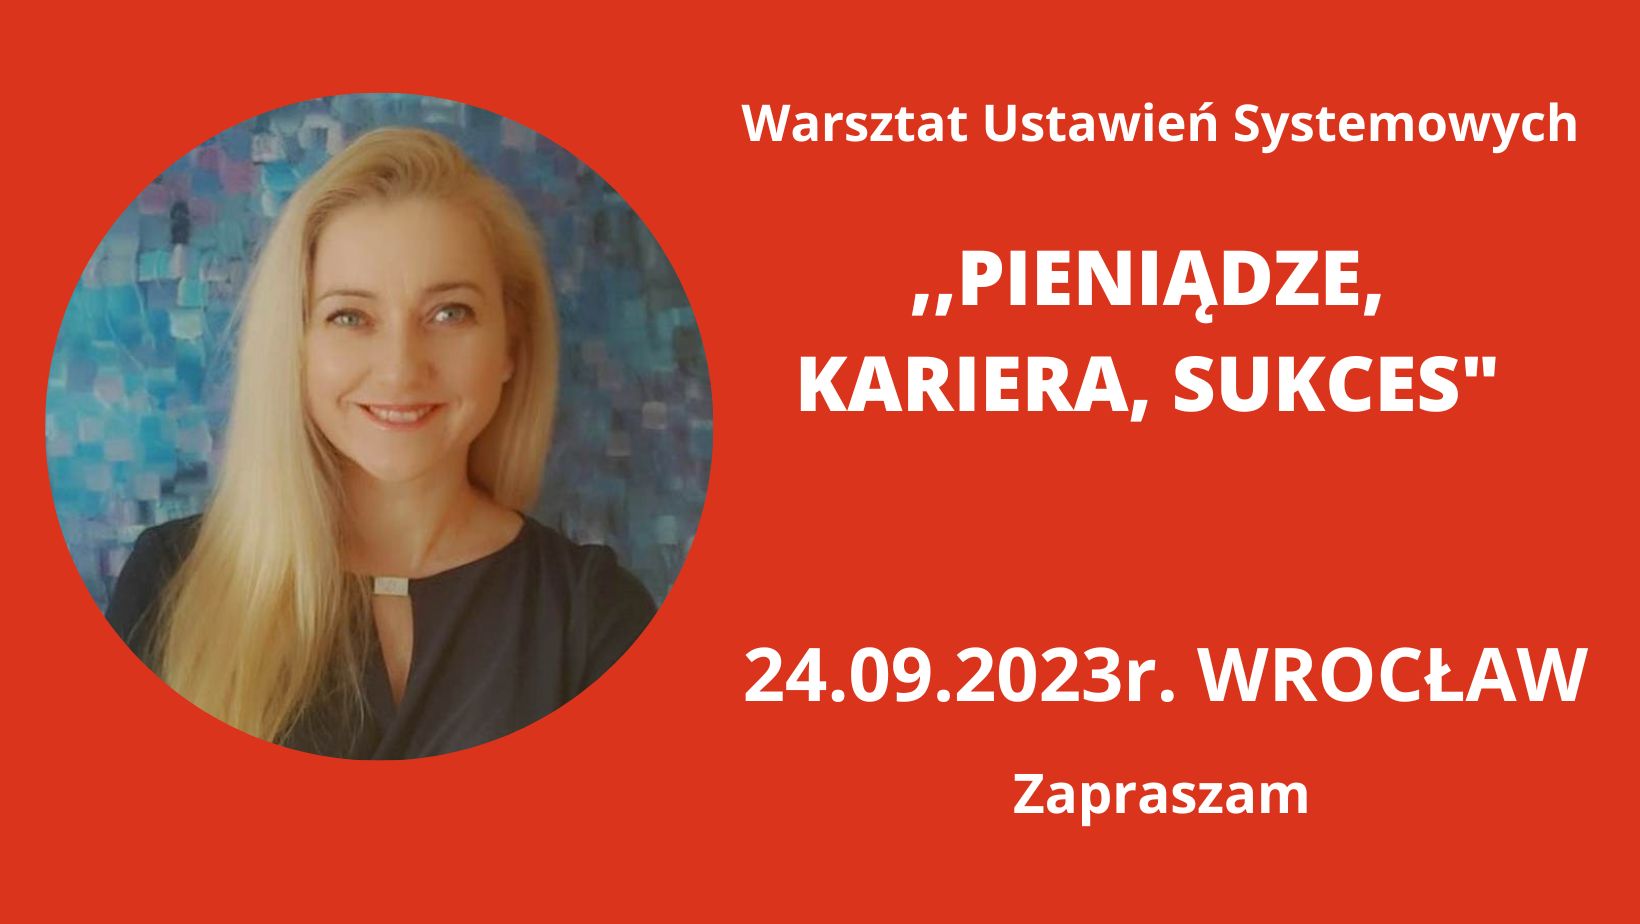 You are currently viewing 24.09.2023r. Wrocław ,,Pieniądze, Kariera, Sukces” Warsztat Ustawień Systemowych